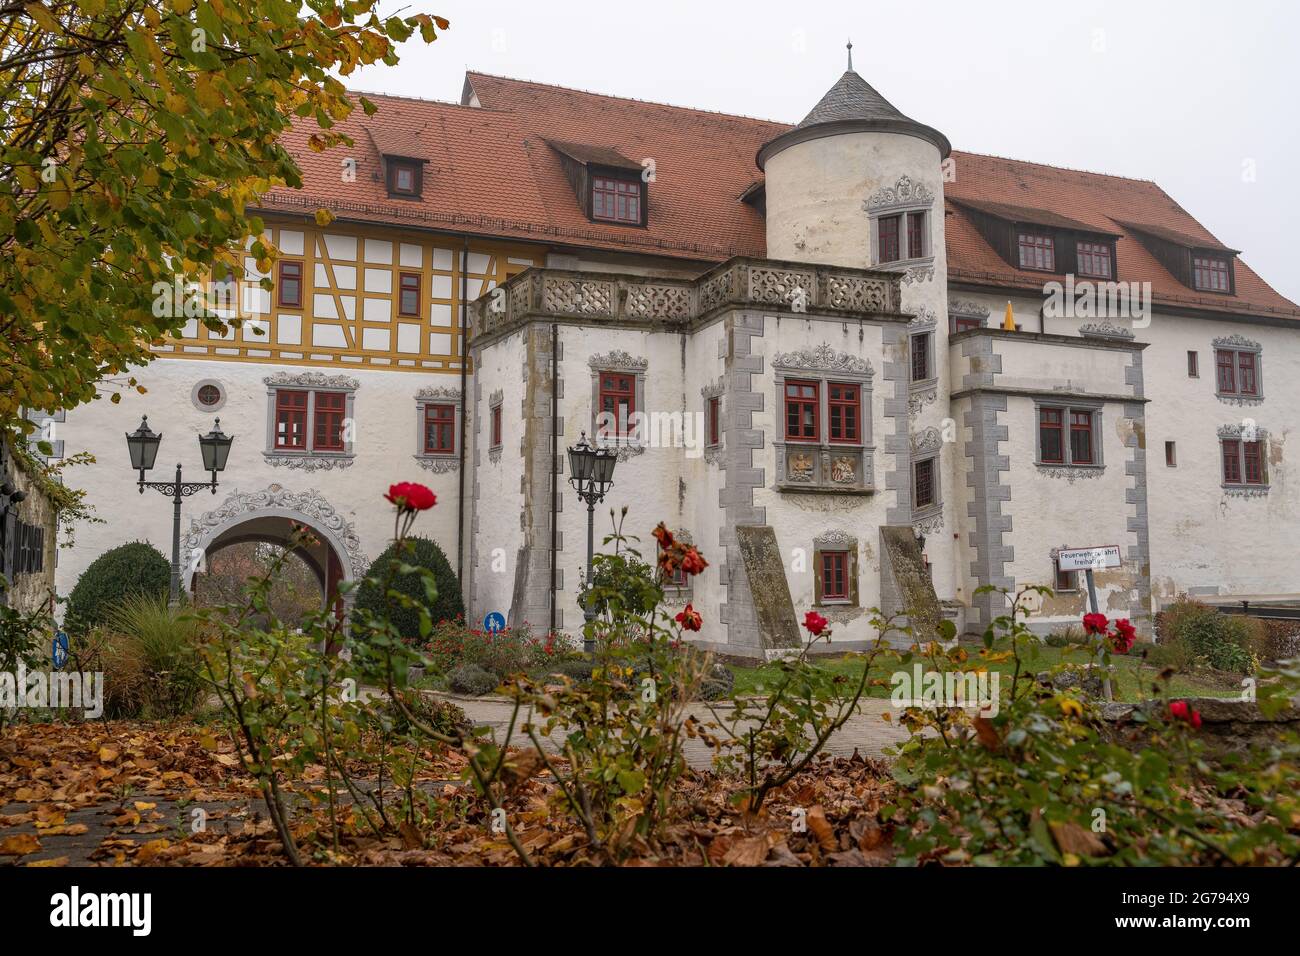 Europe, Germany, Baden-Wuerttemberg, Neckar Valley, Neckarwestheim, Liebenstein Castle, view of the gatehouse and palas of the Liebenstein castle complex Stock Photo